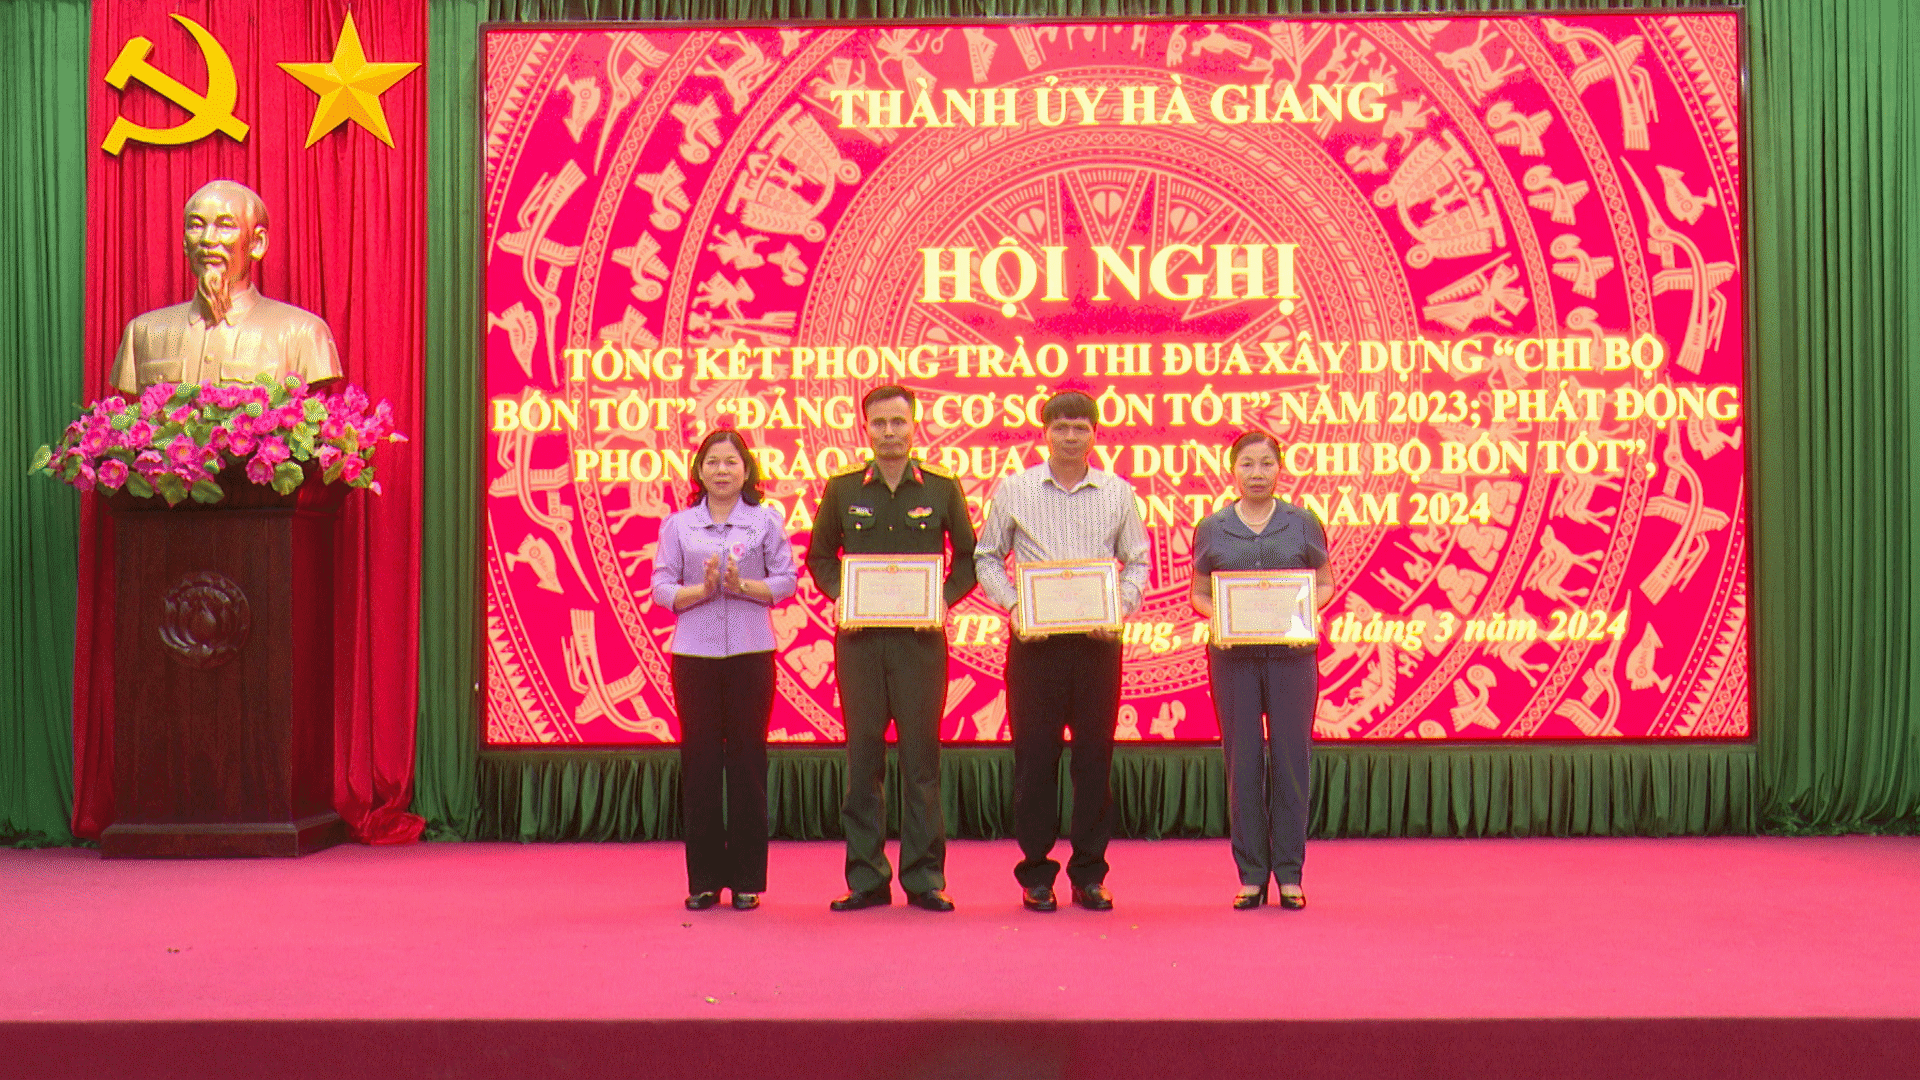 Thành ủy Hà Giang tổng kết phong trào thi đua xây dựng “Chi bộ bốn tốt, Đảng bộ cơ sở bốn tốt” năm 2023, phát động phong trào thi đua năm 2024